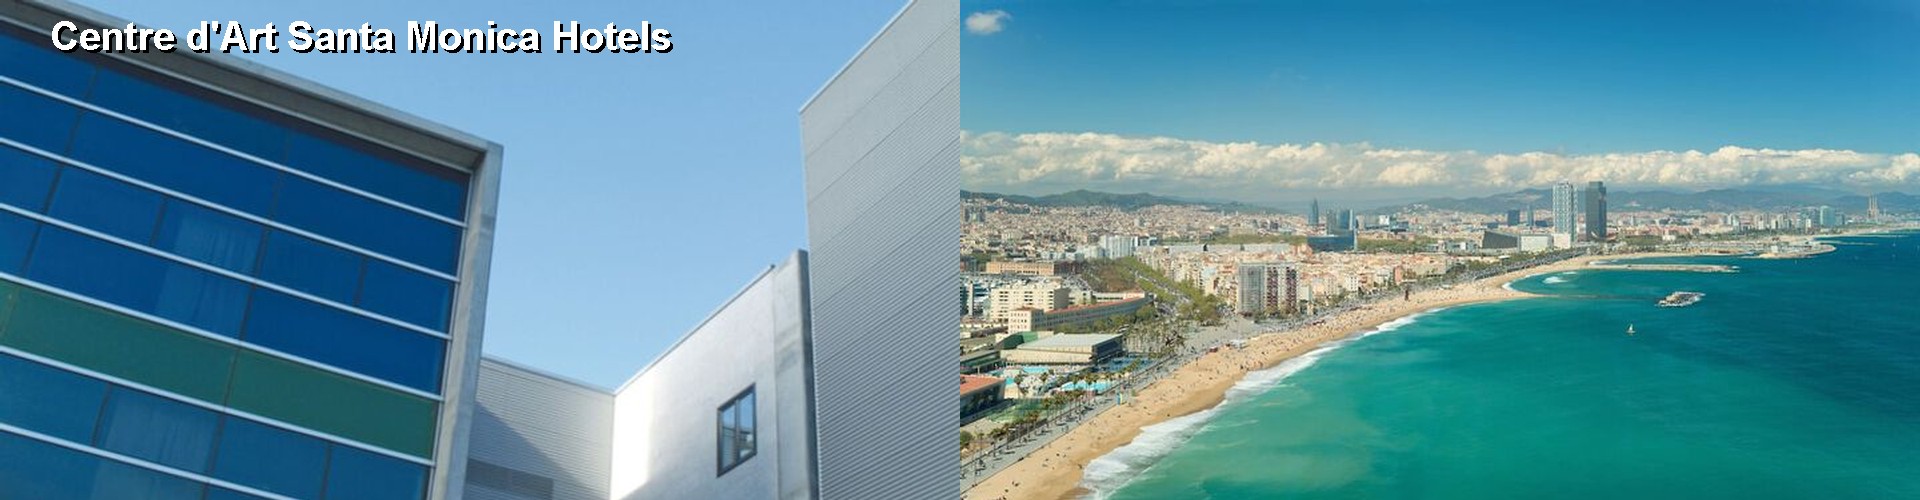 5 Best Hotels near Centre d'Art Santa Monica